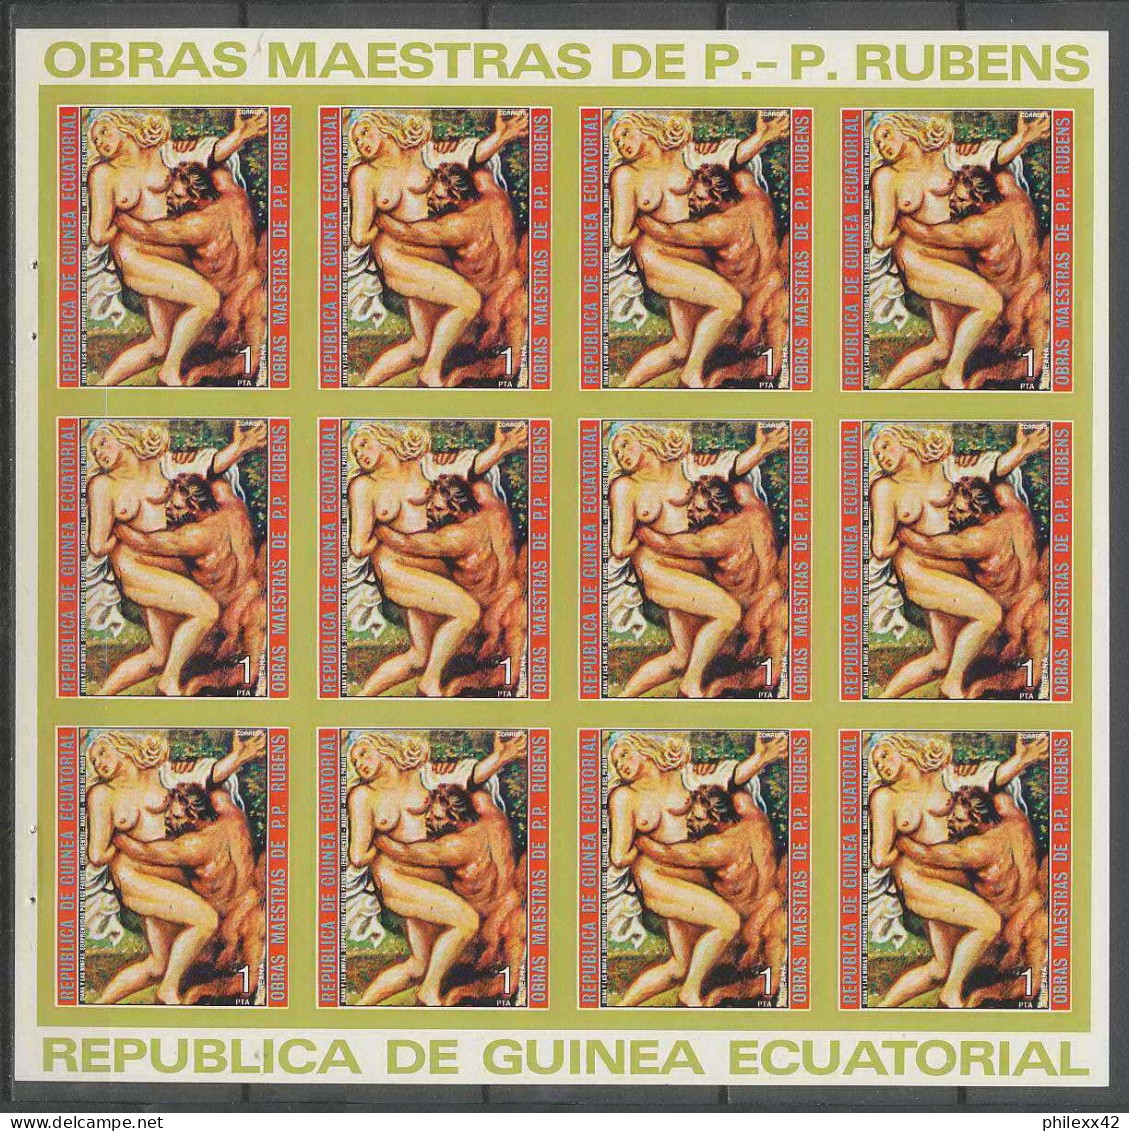 Guinée équatoriale Guinea 247a N°285 Rubens Essai Proof Non Dentelé Imperf Orate Tableau Painting Nus Nudes - Desnudos